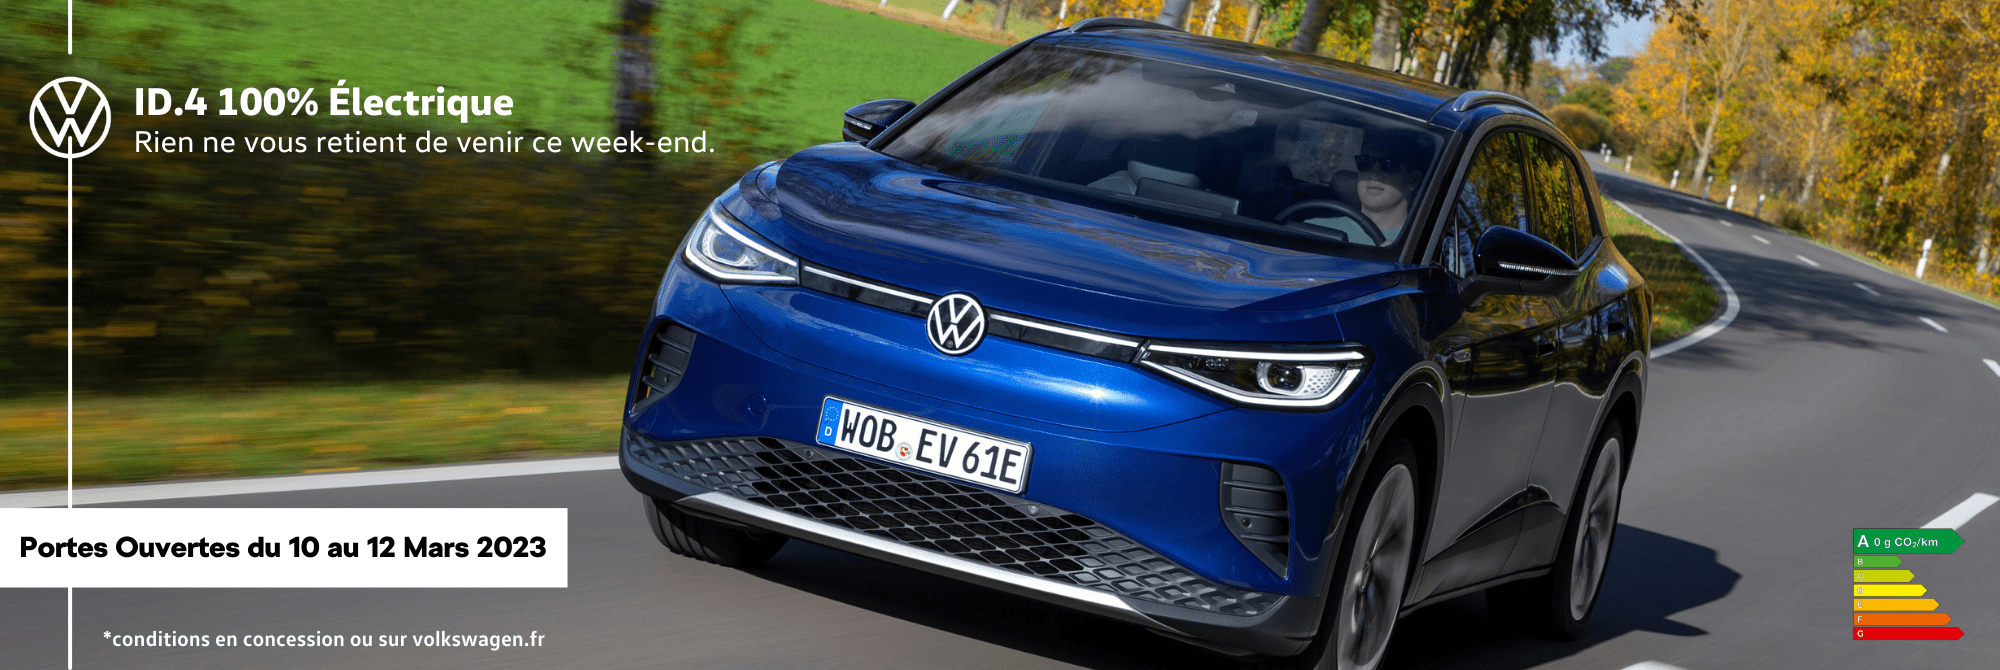 Volkswagen Paris 13 - Venez passer un moment électrisant